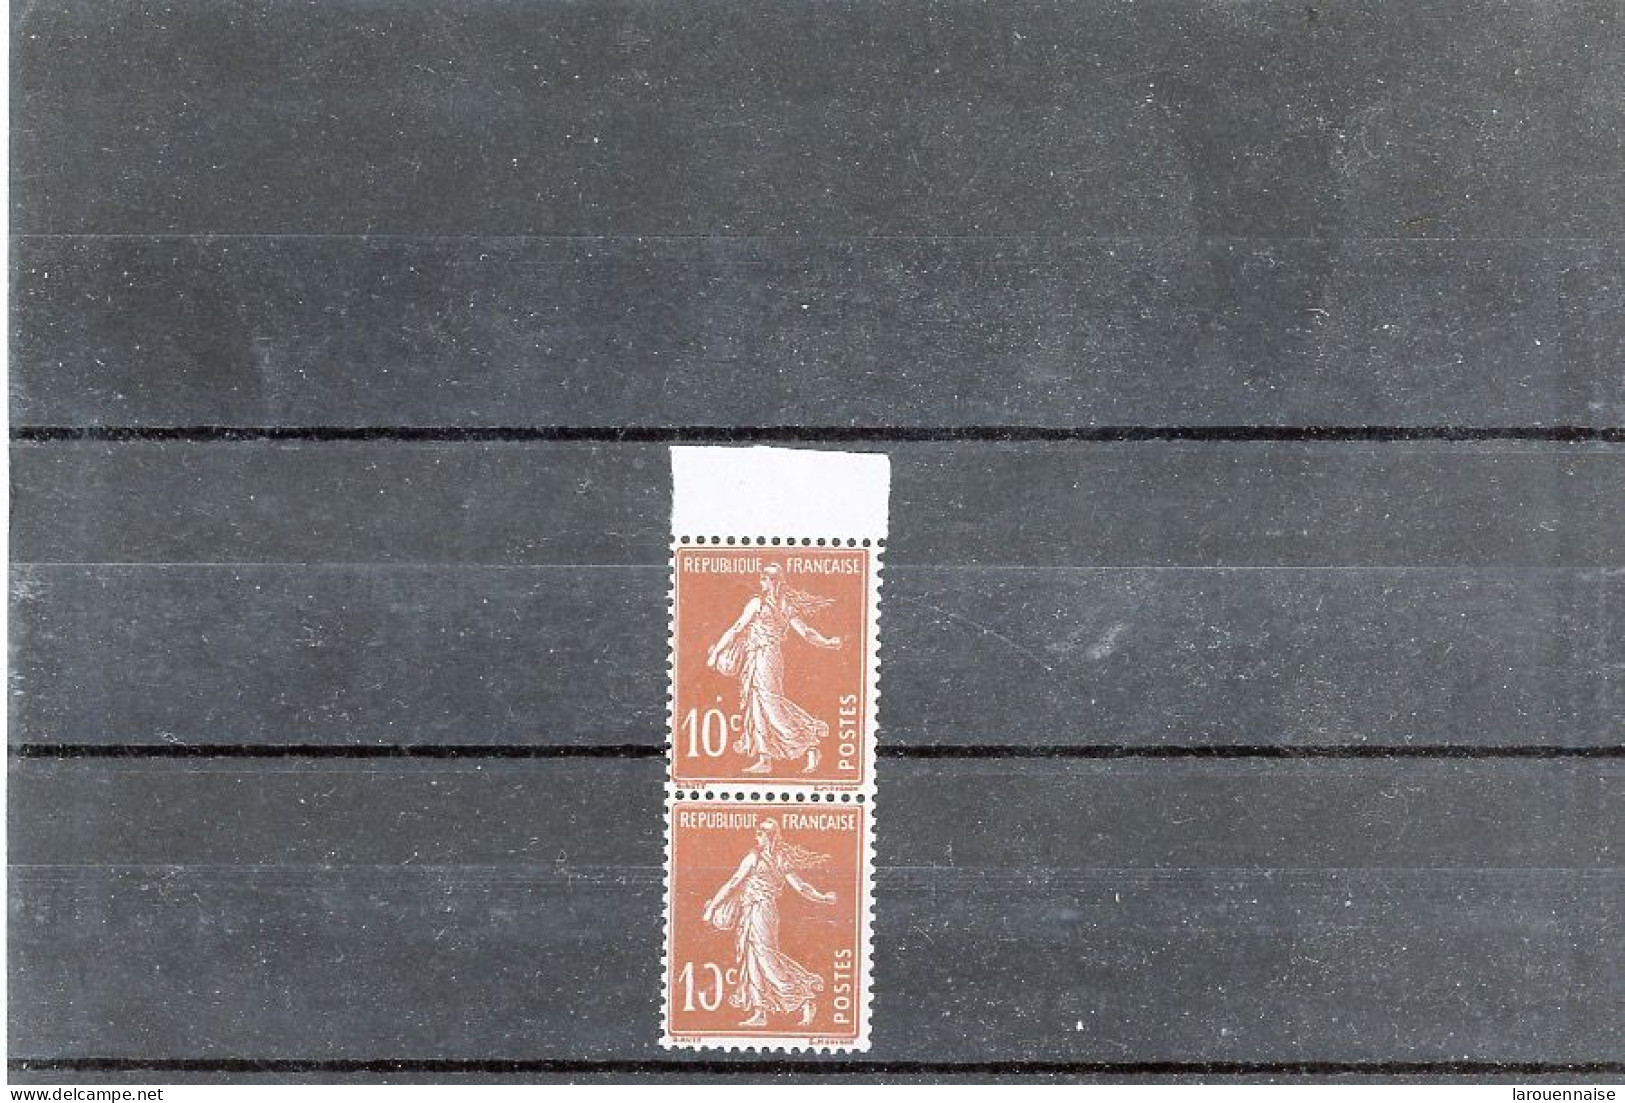 N°138 -10c ROUGE (IA)  N** TIMBRE DU HAUT  -POINT BLANC  SUR LE 0 DE 10c-TIMBRE DU BAS 0 De 10c INCOMPLET - Unused Stamps